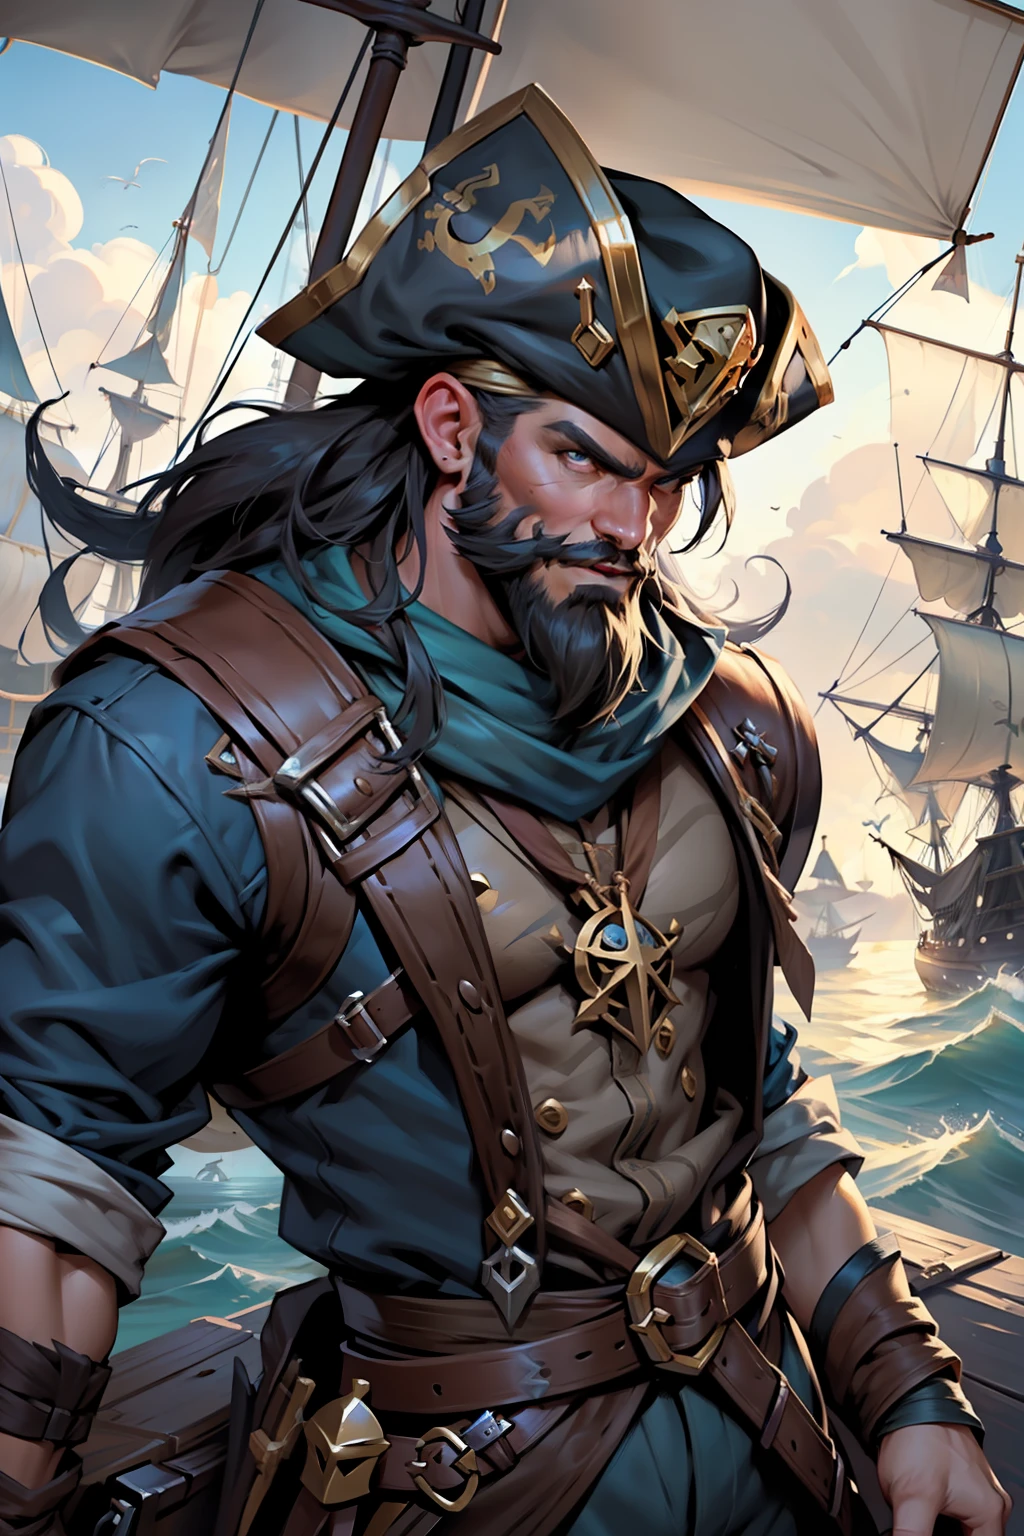 ゲームリーグオブレジェンドの海賊キャラクターギャングプランクの詳細なイラストを想像してみてください. 画像は、威圧的で印象的なポーズでギャングプランクを描いています, 恐ろしい海賊船長として、彼は. その外観は、ゲームの象徴的なスタイルに従います, キャラクターの特徴的な要素を持つ. イラストは豊富なディテールを提示します, あなたの顔のしわから, 海事体験の表現, 彼が身に着けている海賊のアクセサリーでさえ, 船長の帽子のように, 片手の代わりにフックと木製の脚. あなたの服は着ています, 海での生活を明かす. シーンの照明は劇的です, 影を強調し、キャラクターの周りに神秘的なムードを作り出します. バックグラウンドで, 海洋要素があります, 海賊船のように, 荒波または遠くの島, 海賊のテーマを強化する. アートはリーグ・オブ・レジェンドのスタイルで行われます, 鮮やかな色と印象的なストロークで. それはギャングプランクの冷酷で激しい本質を捉えています, 彼の危険とリーダーシップのオーラを伝える. 一般的に, 画像は、キャラクターの印象的で刺激的な表現です, リーグ・オブ・レジェンドのファンをギャングプランクの海賊の世界に没頭させる準備ができています